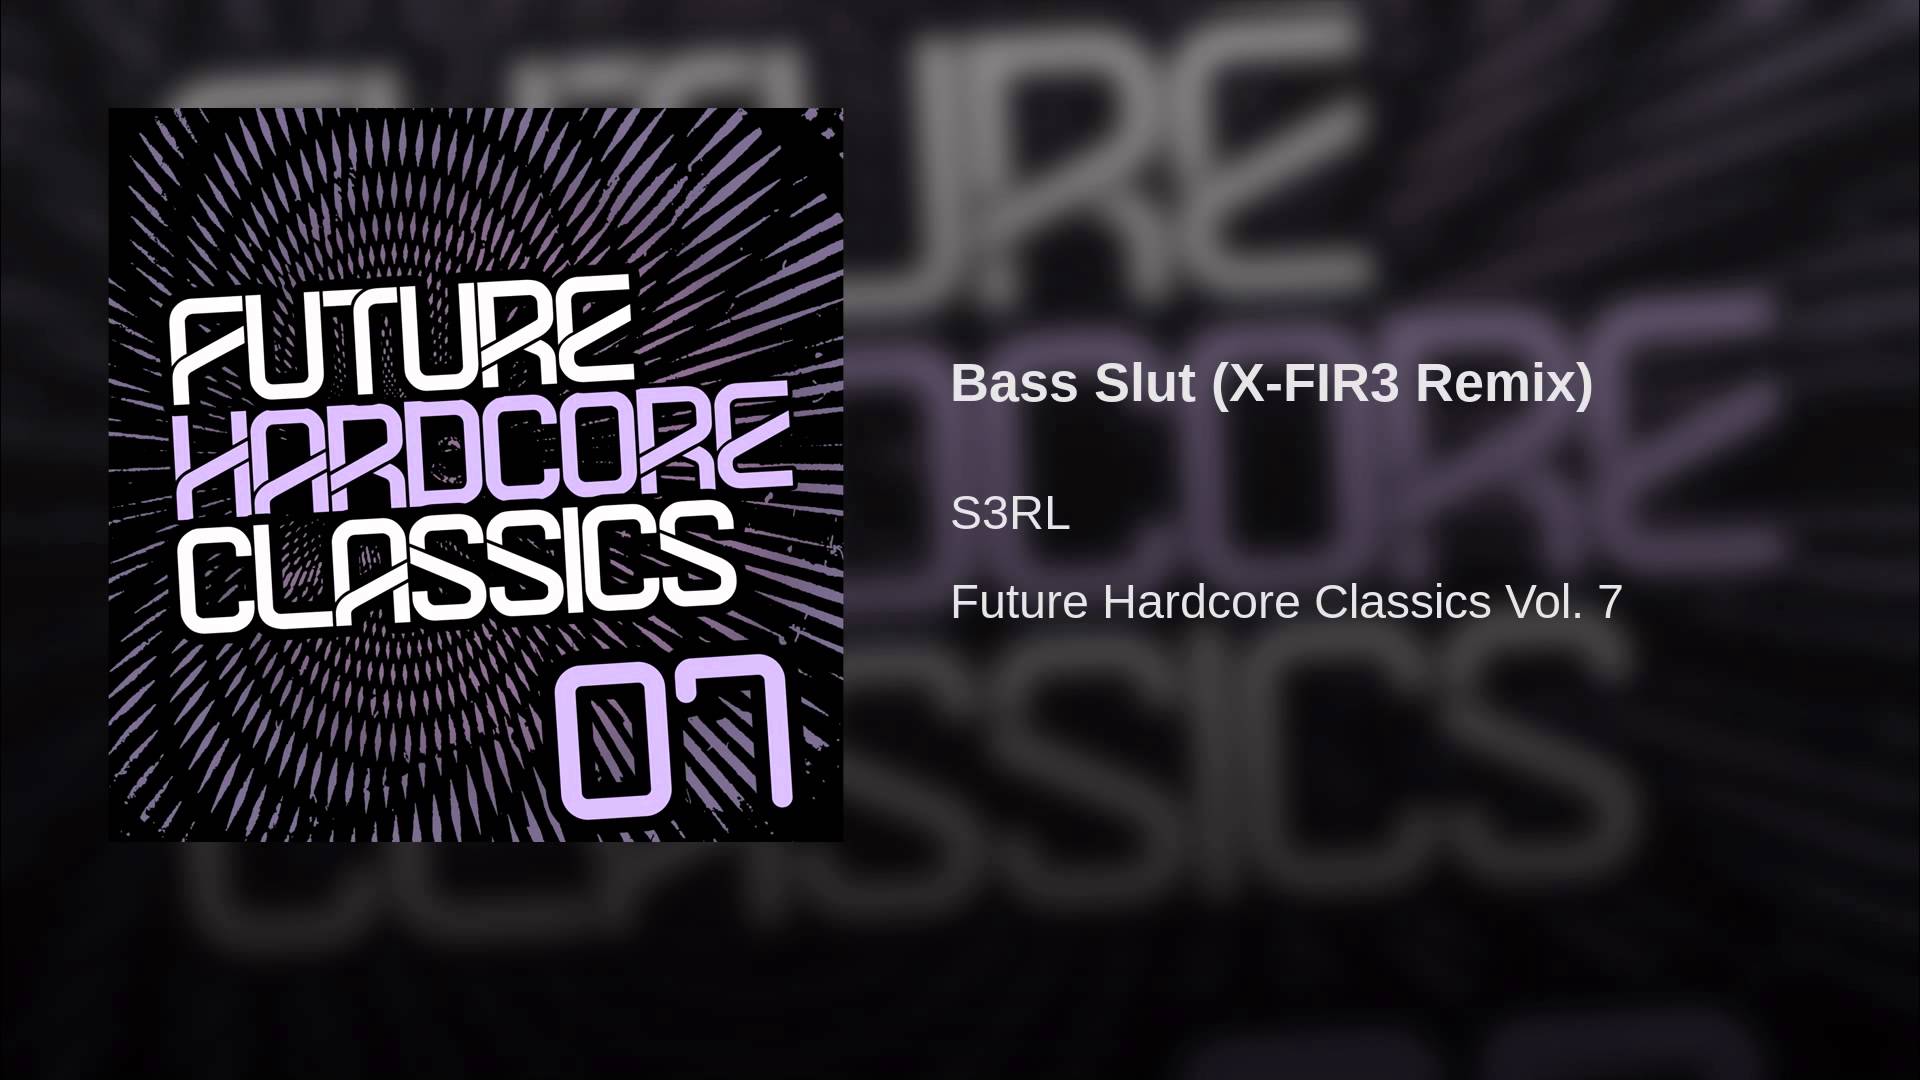 Bass Slut (X-FIR3 Remix) - YouTube